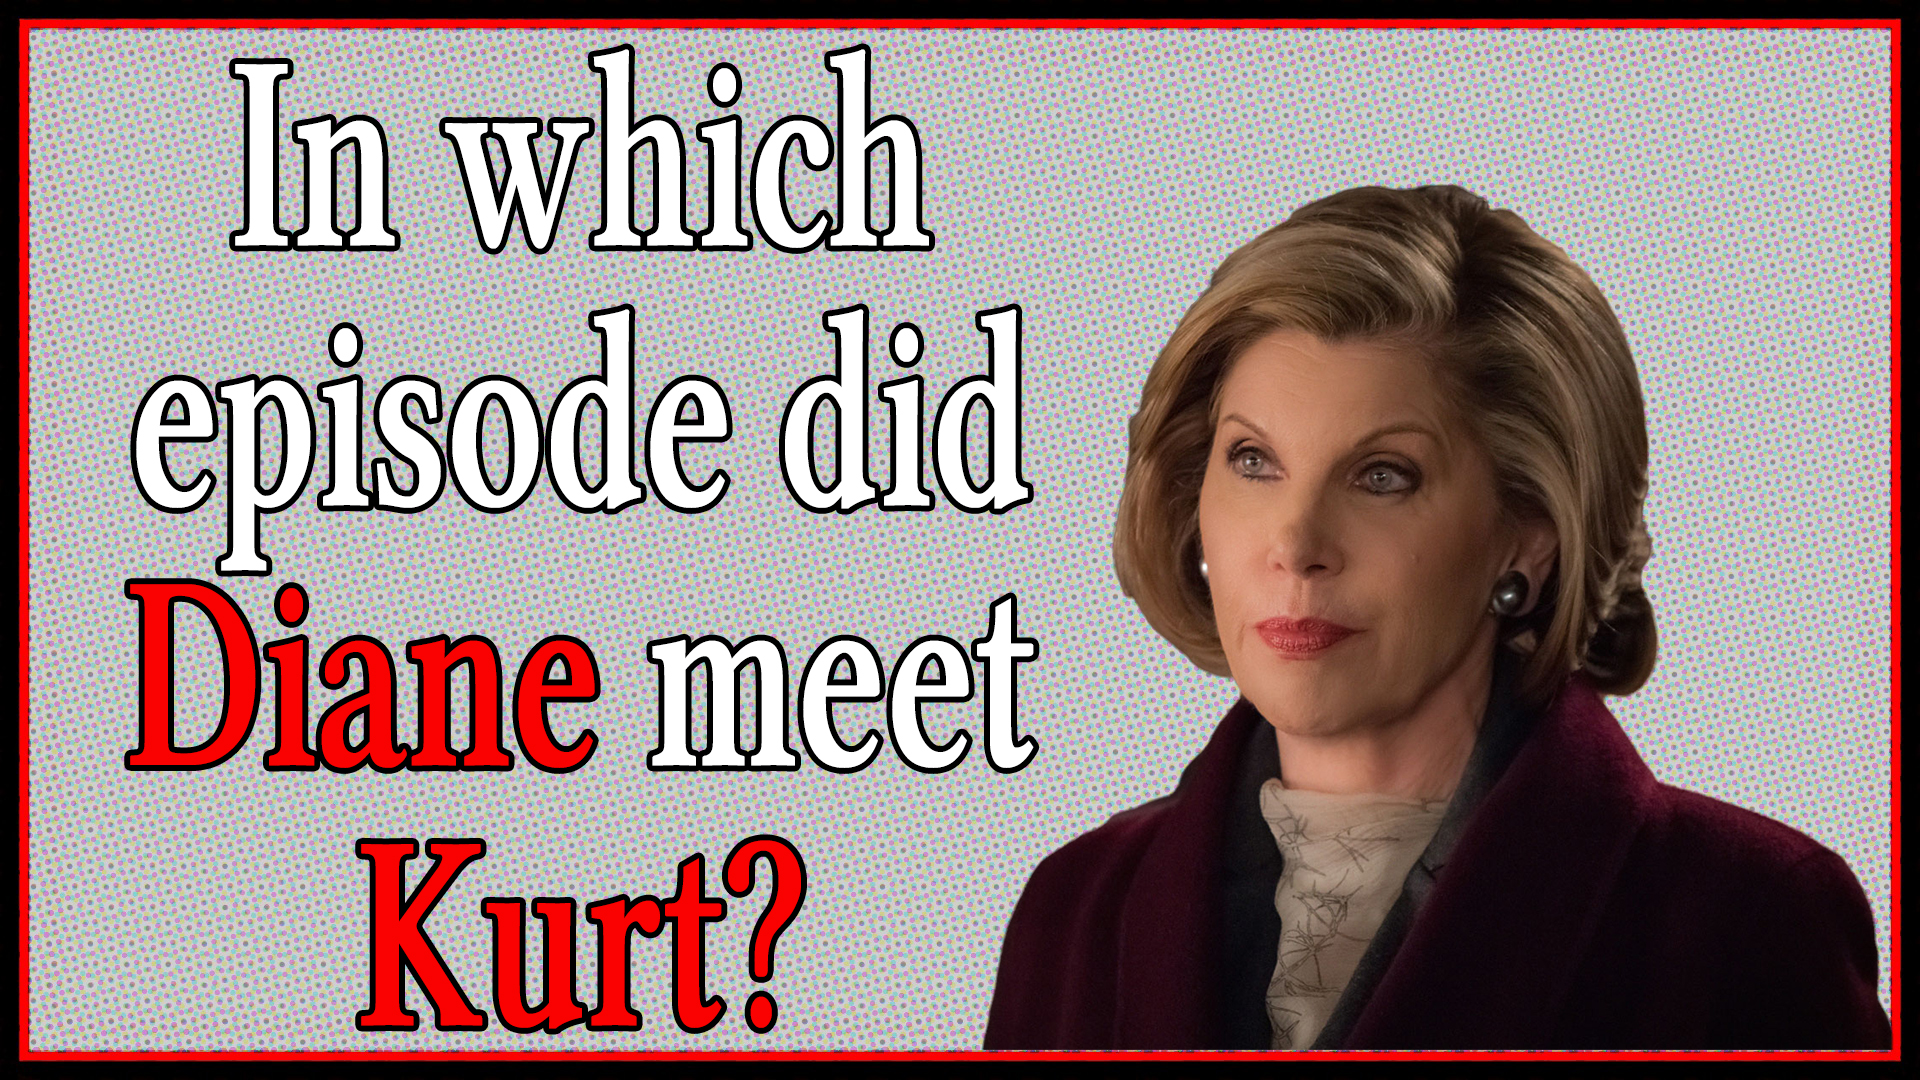 In which episode did Diane meet Kurt?